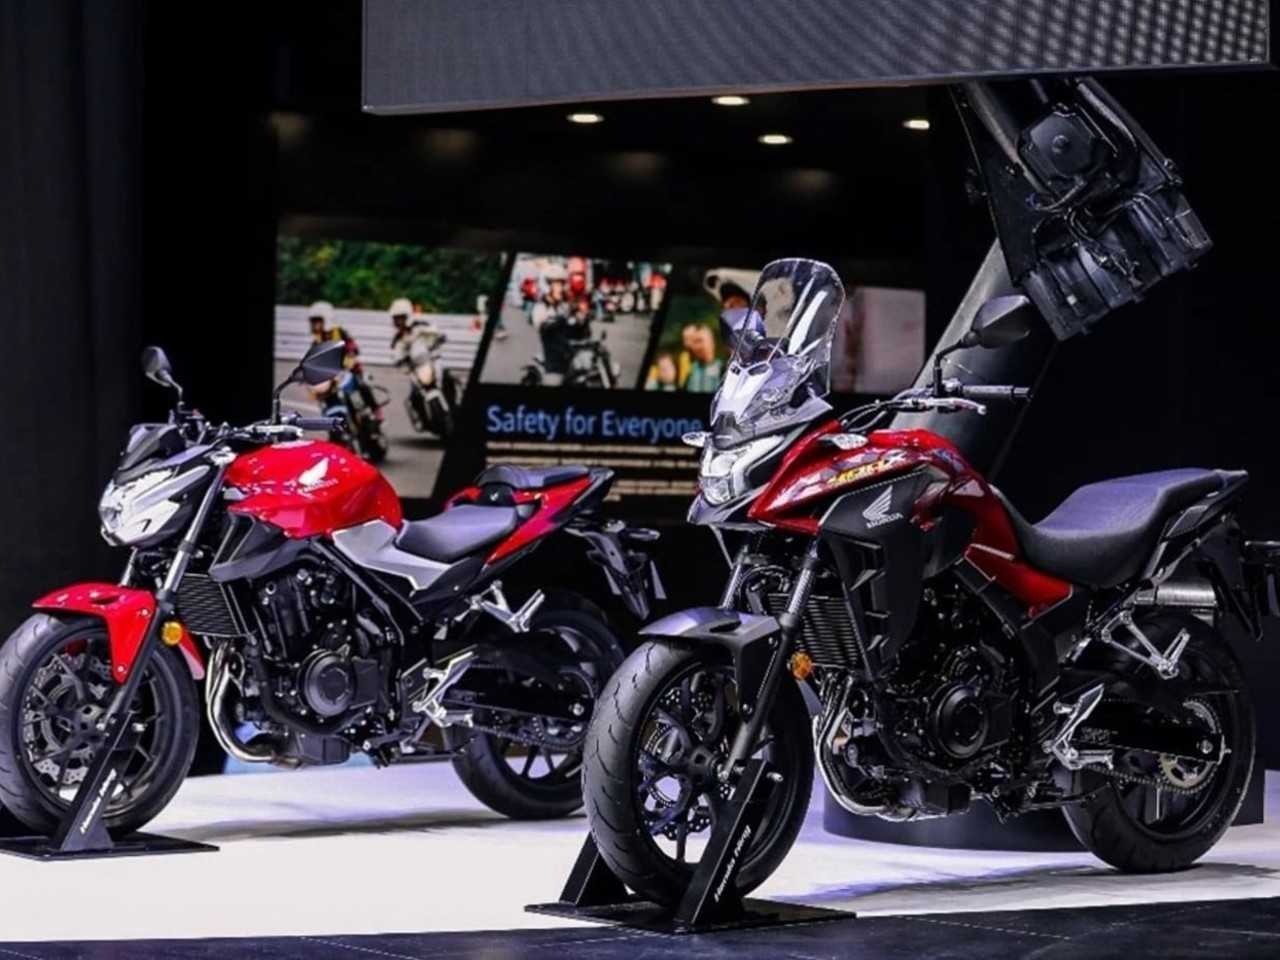 Galeria de fotos Nova Honda CB 400 é apresentada na China